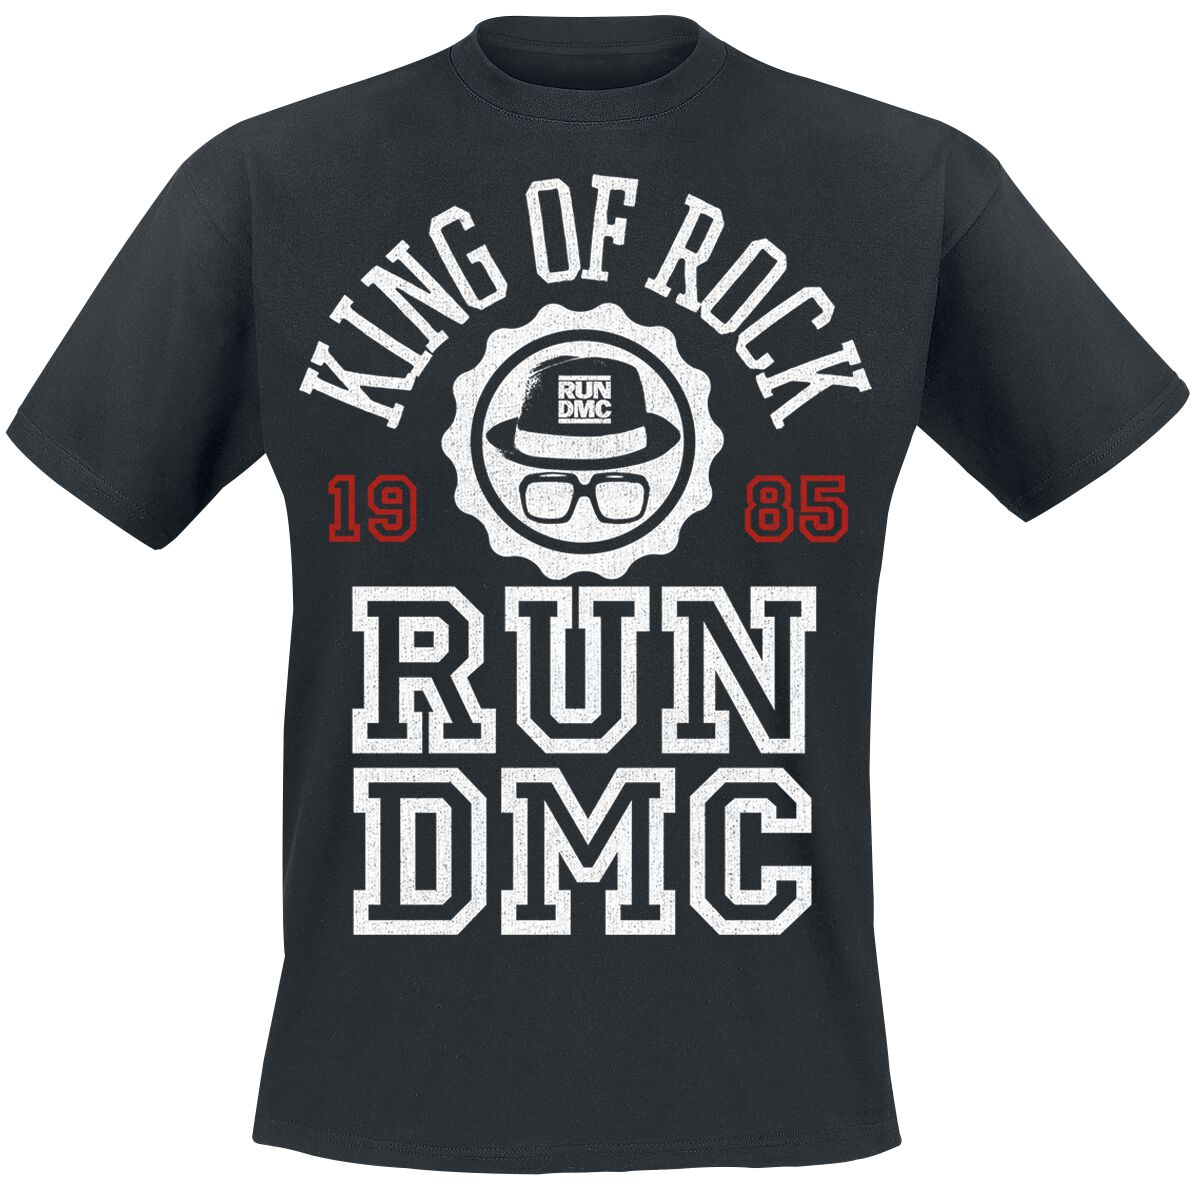 Run DMC T-Shirt - Collegiate - King Of Rock 1985 - S - für Männer - Größe S - schwarz  - Lizenziertes Merchandise! von Run DMC